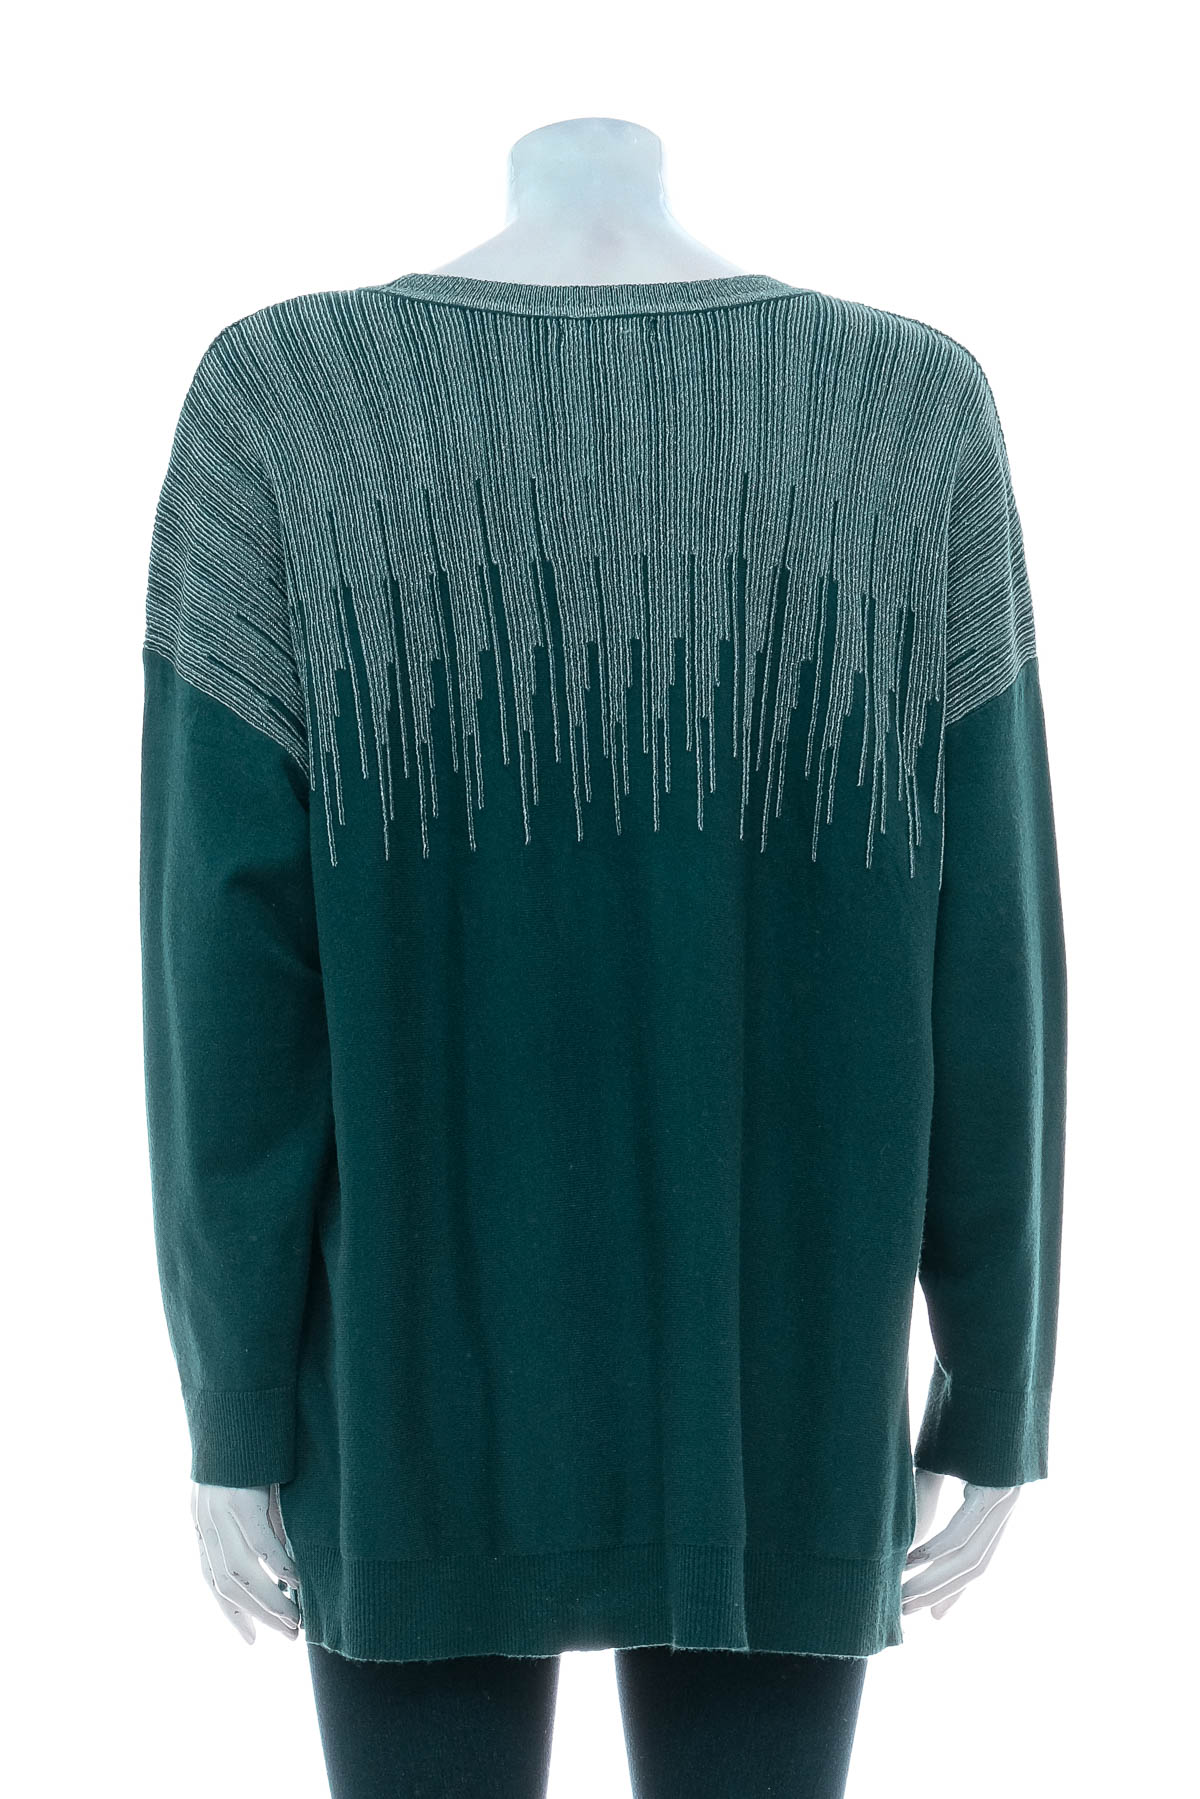 Women's sweater - Alfani - 1